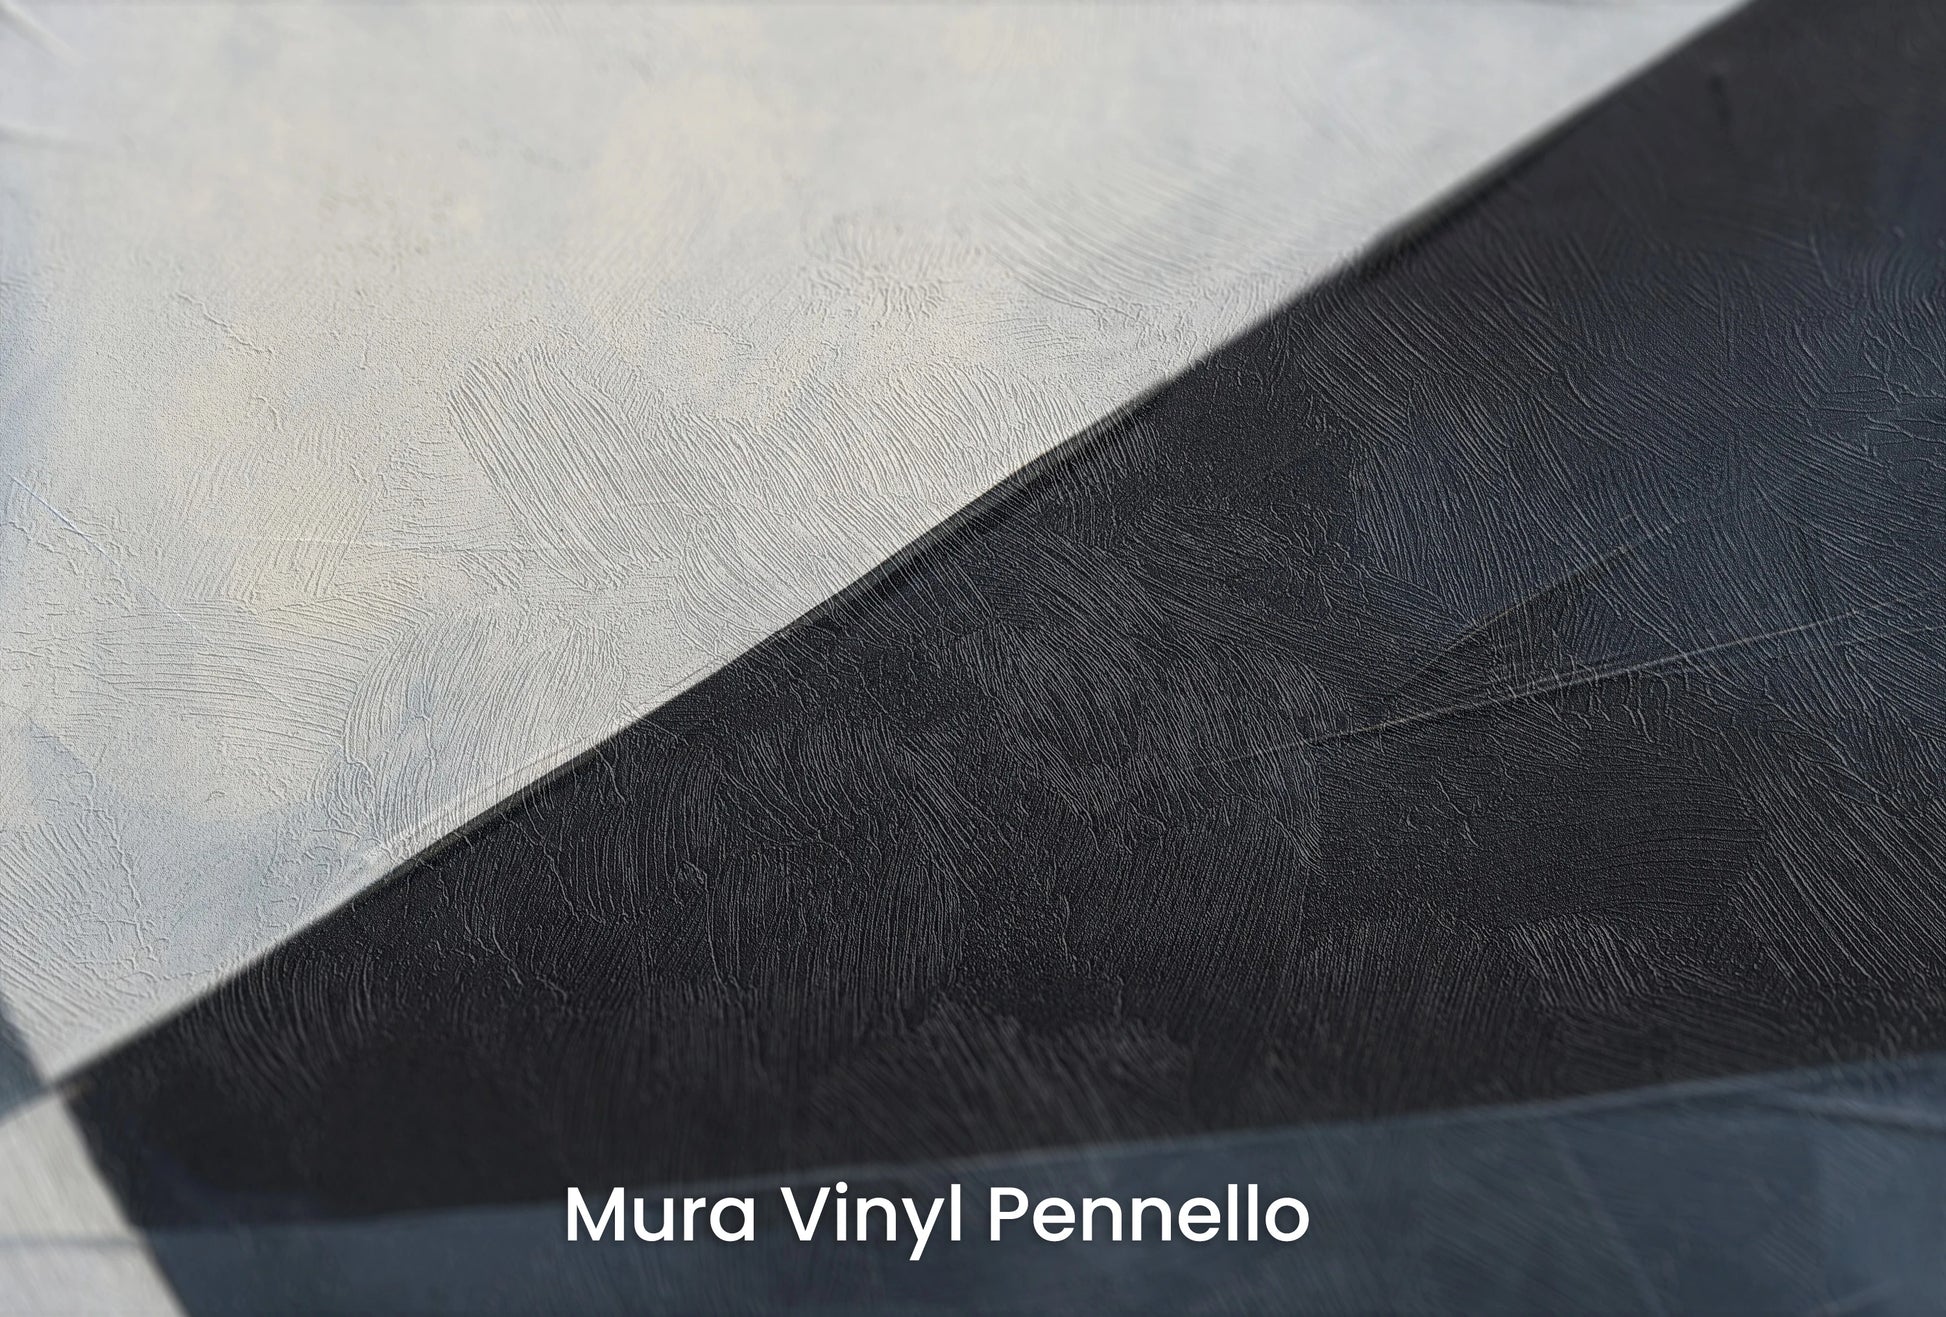 Zbliżenie na artystyczną fototapetę o nazwie Sharp Geometric Contrast na podłożu Mura Vinyl Pennello - faktura pociągnięć pędzla malarskiego.